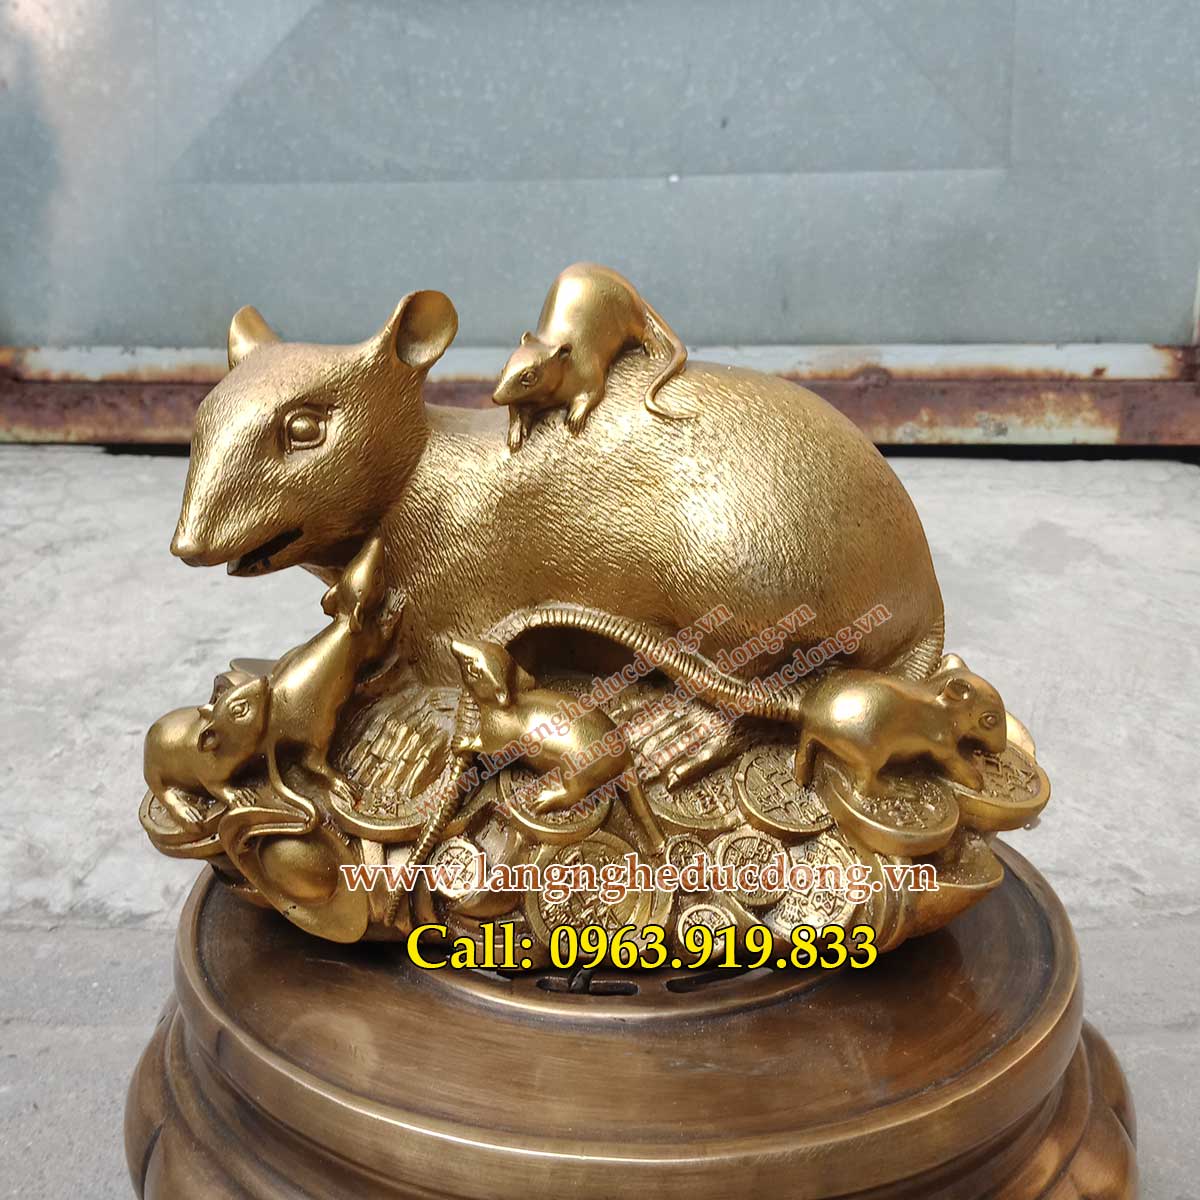 bán chuột đồng phong thủy. các mẫu chuột phong thủy bằng đồng, giá bán chuột đồng